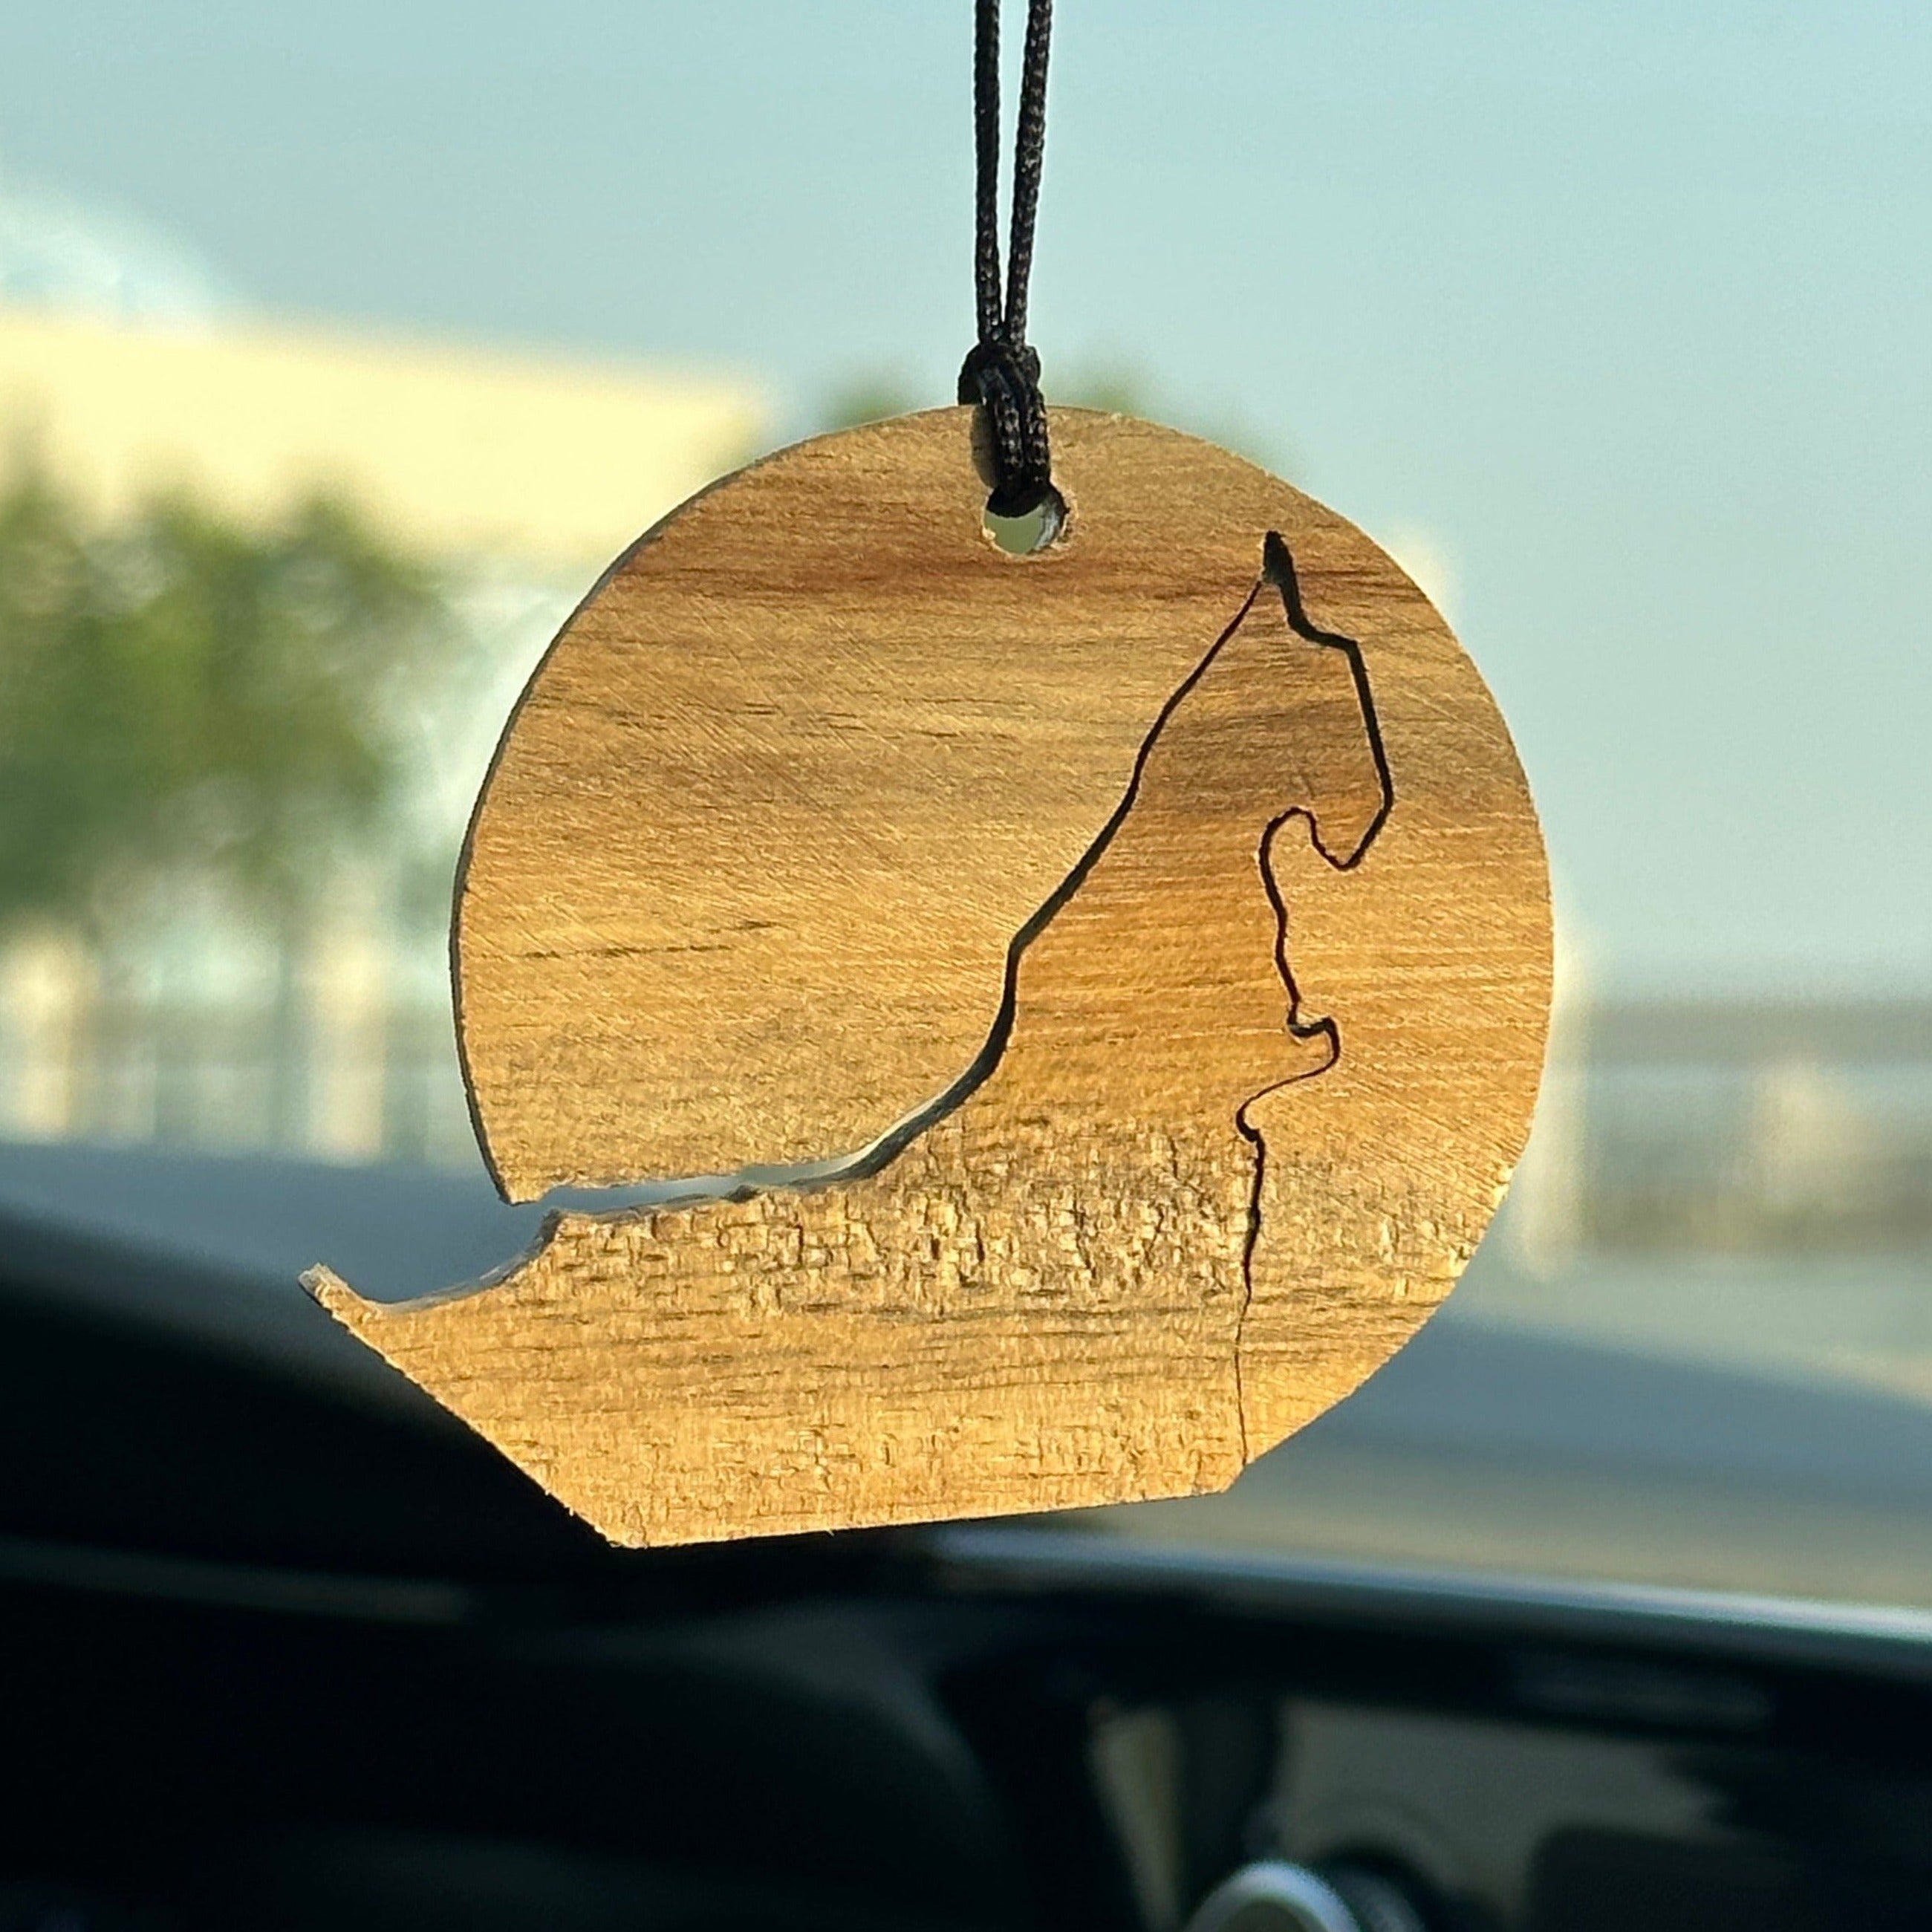 Ghaf Wood UAE Car Pendant